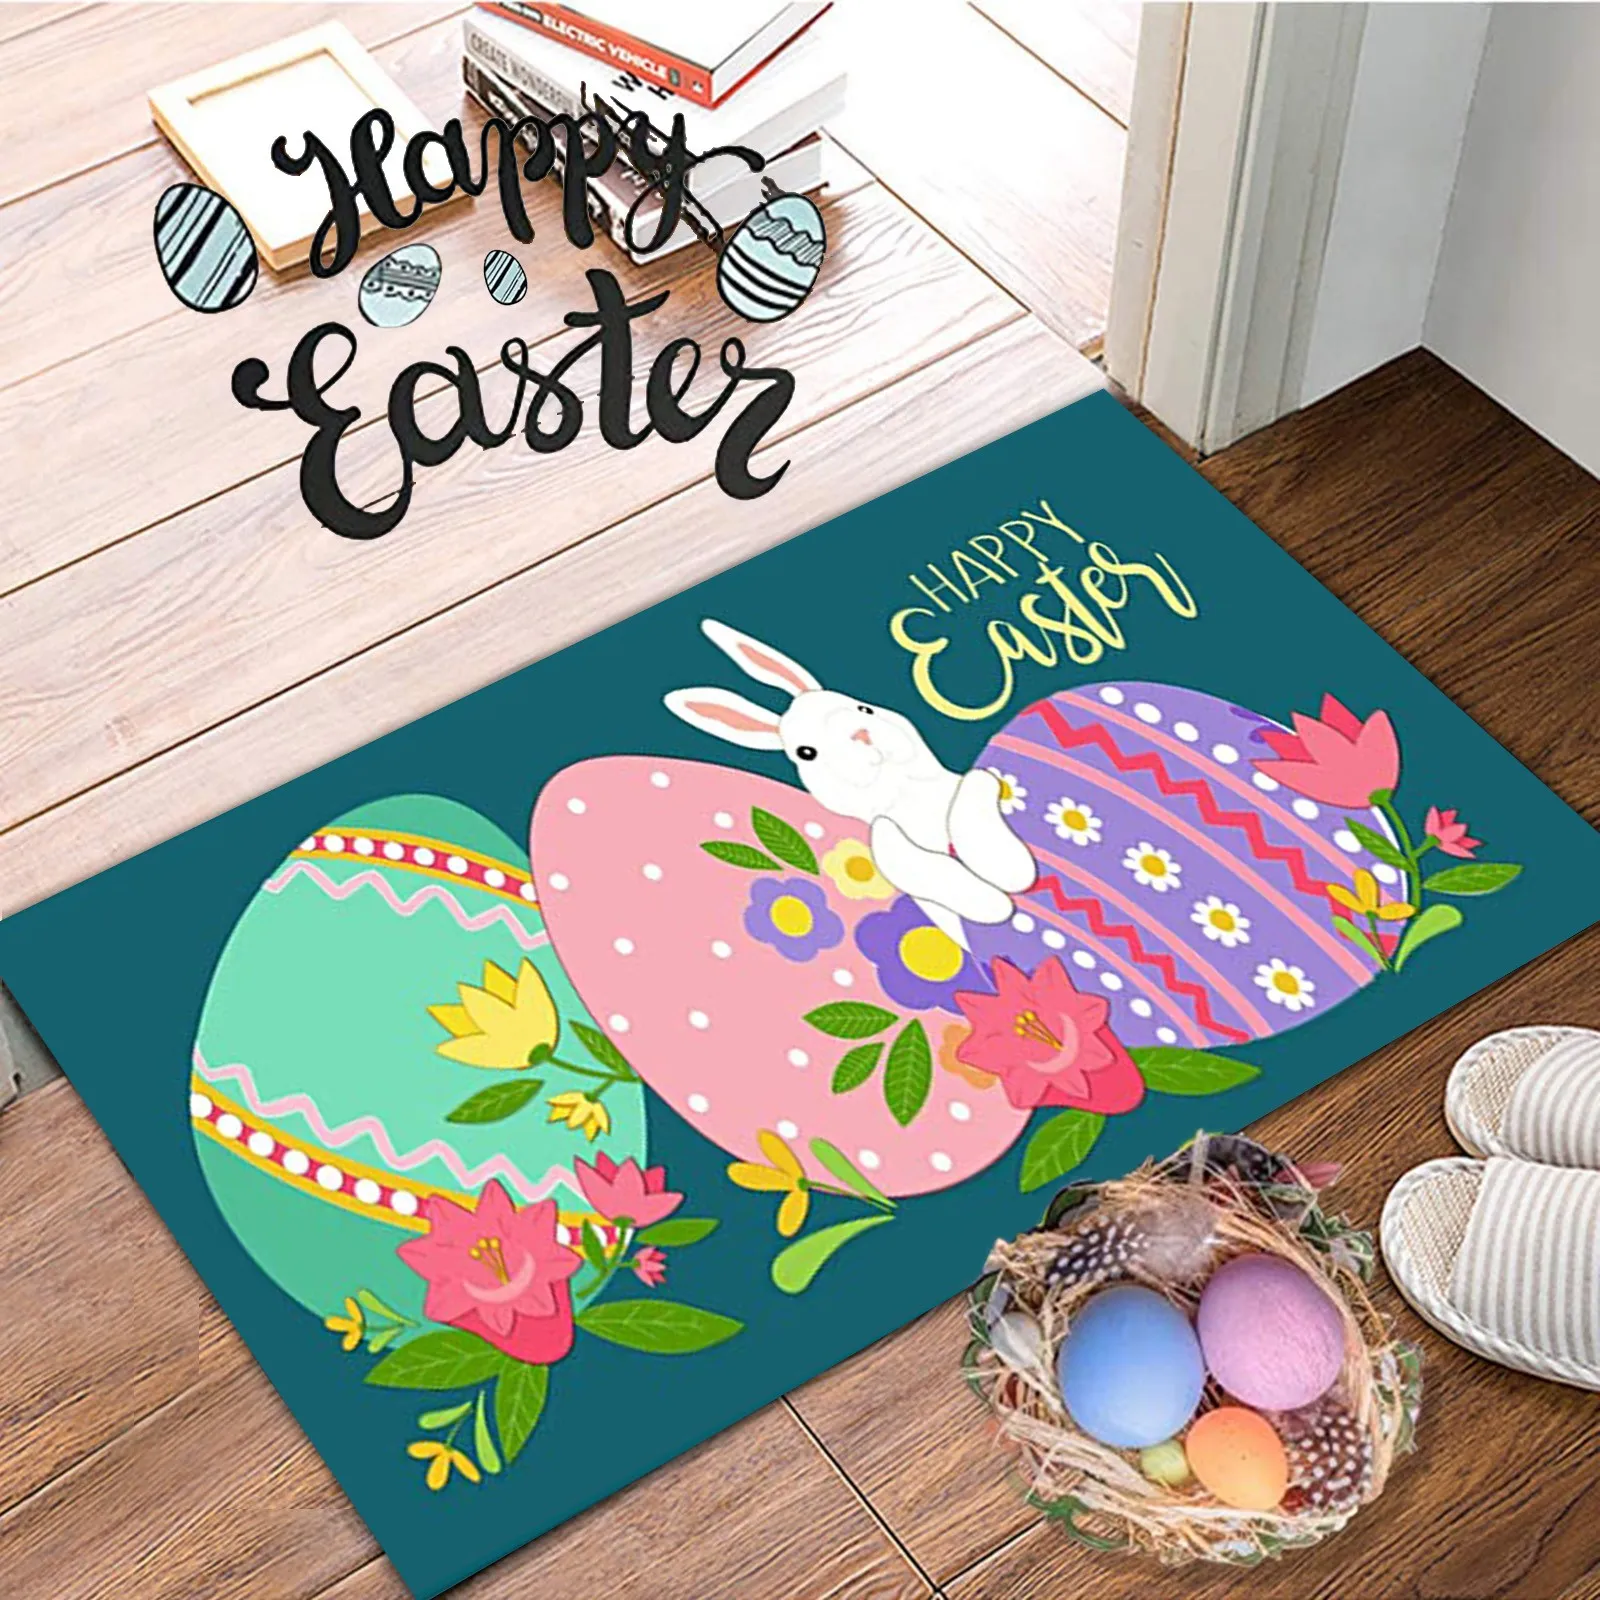 

40x60cm Bunny print Welcome Entrance Doormats Carpets Easter Day Decoration Doormat Anti-skid Bottom Floor Indoor Outdoor Carpet